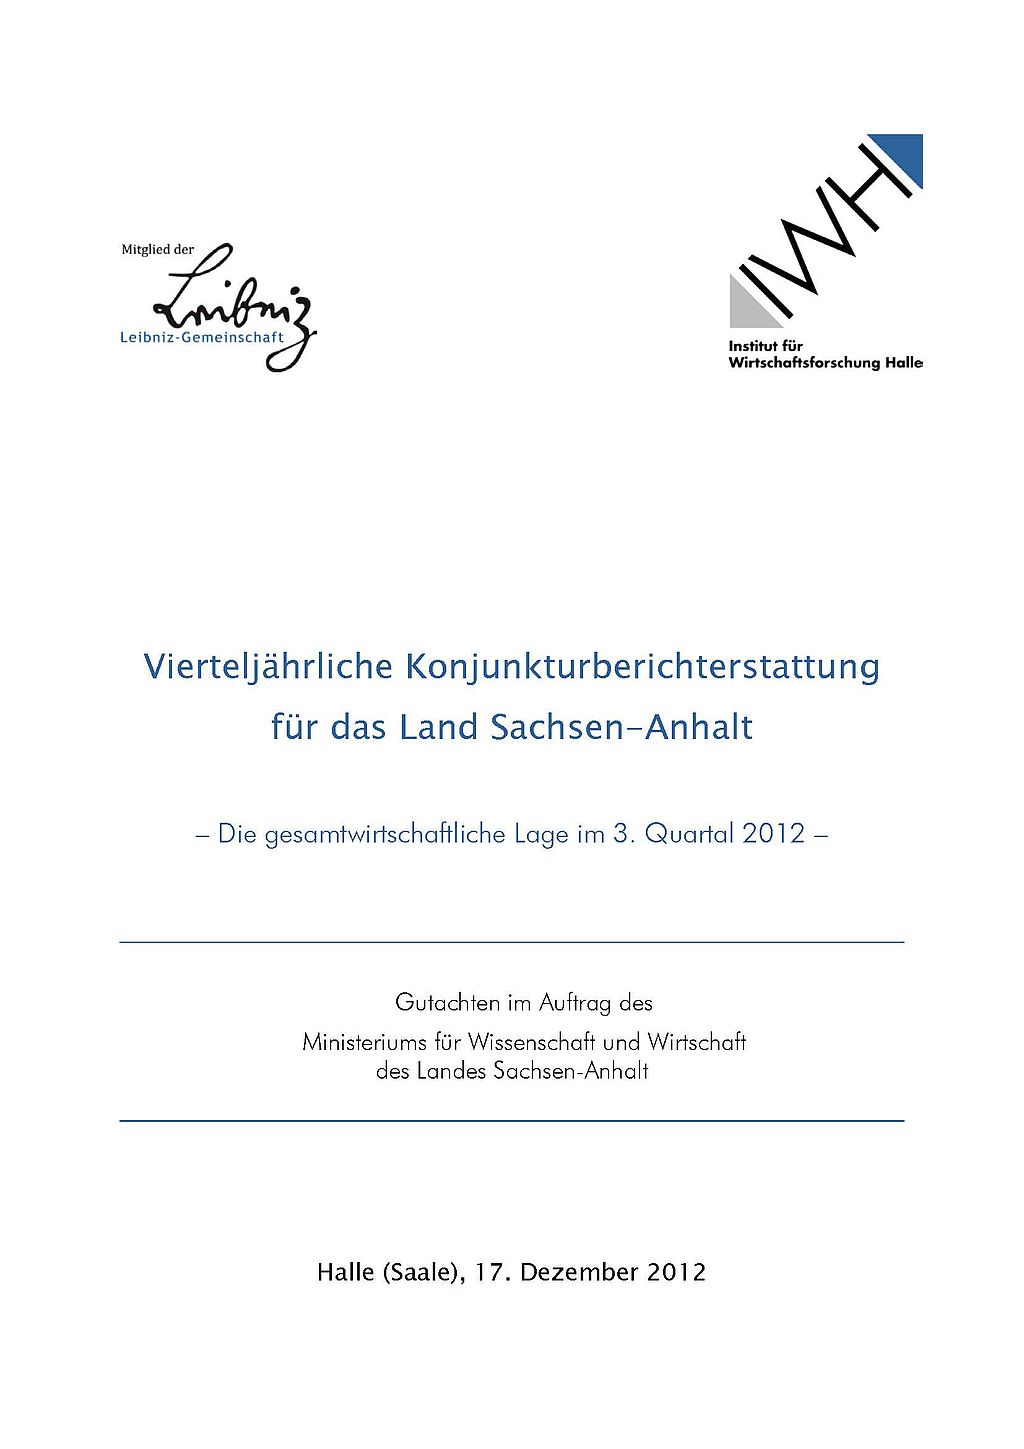 cover_2012_loose_brautzsch_exss_konjunktur_sachsen-anhalt_q3.jpg